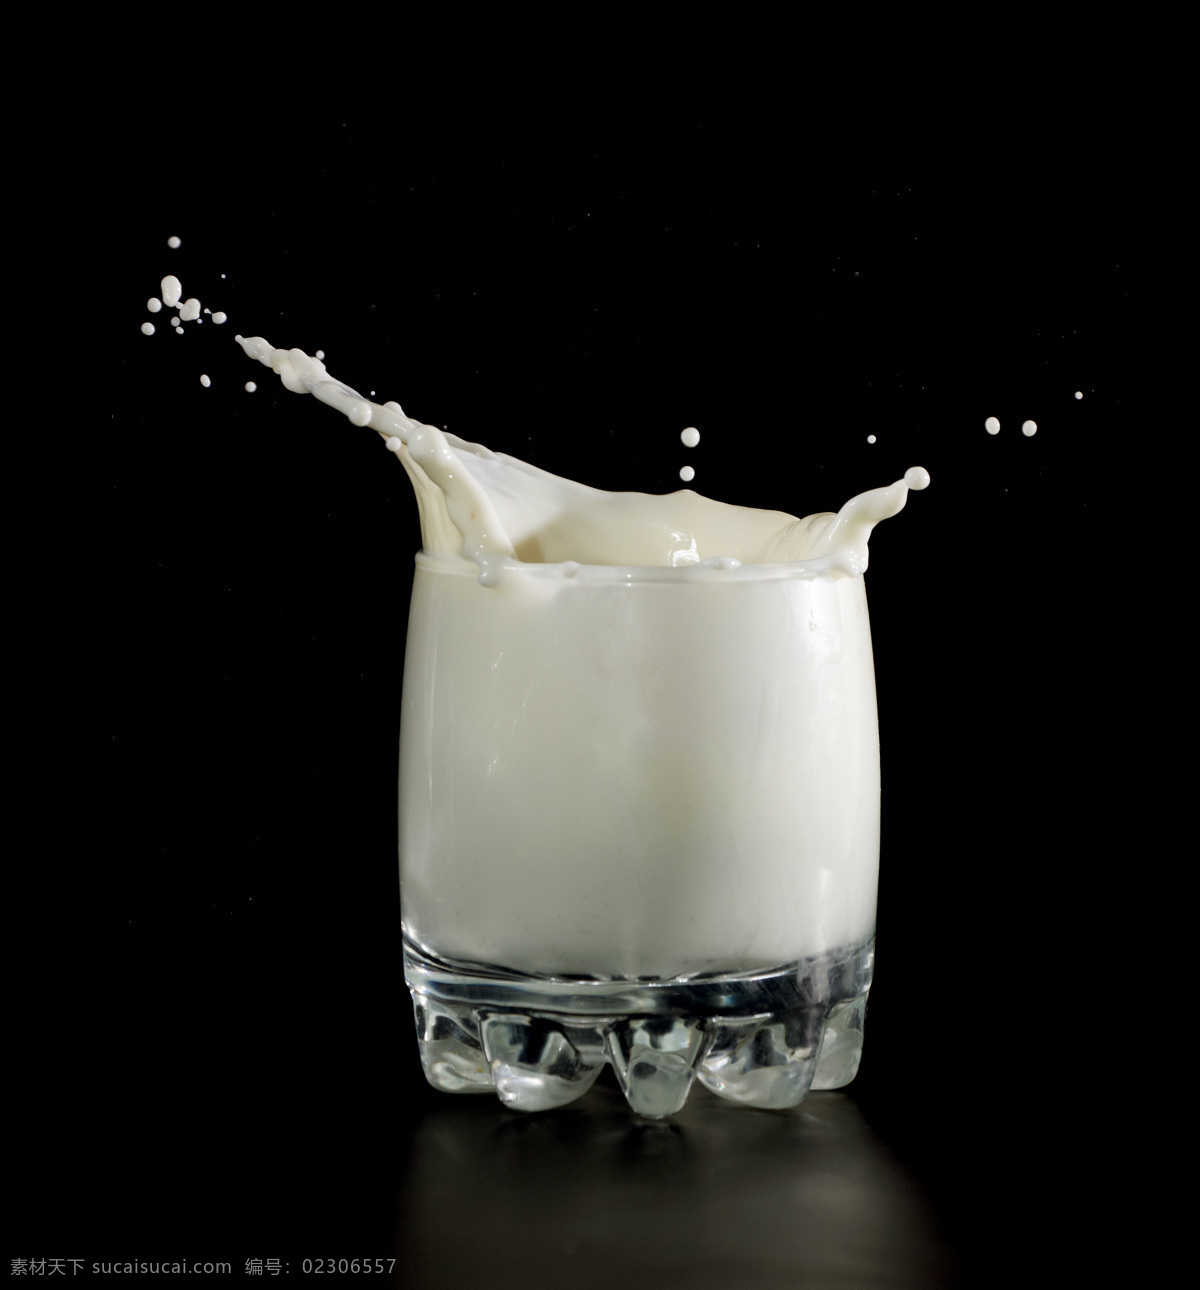 一杯 动感 牛奶 涟漪 奶滴 乳白色液体 饮品 饮料 餐饮美食 酒类图片